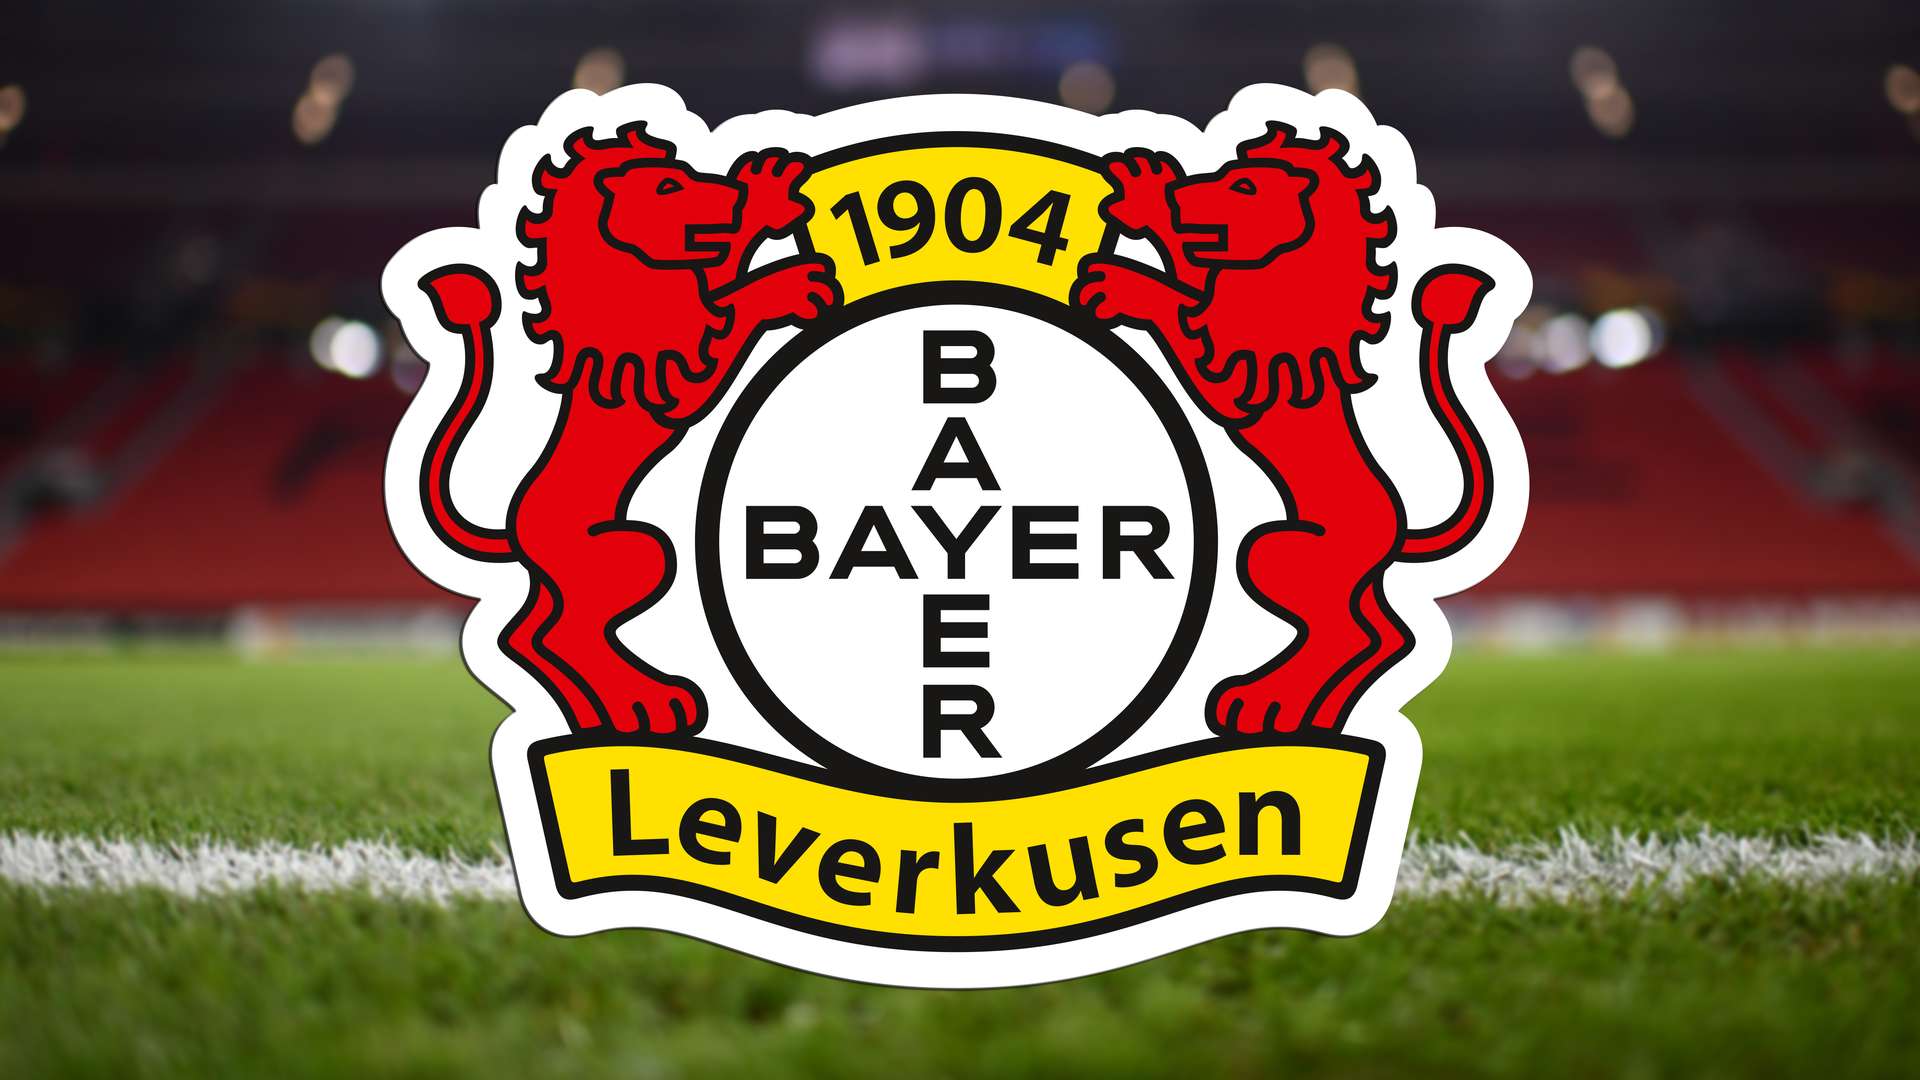 Descarga gratuita de fondo de pantalla para móvil de Fútbol, Logo, Emblema, Deporte, Bayer 04 Leverkusen, Bundesliga.